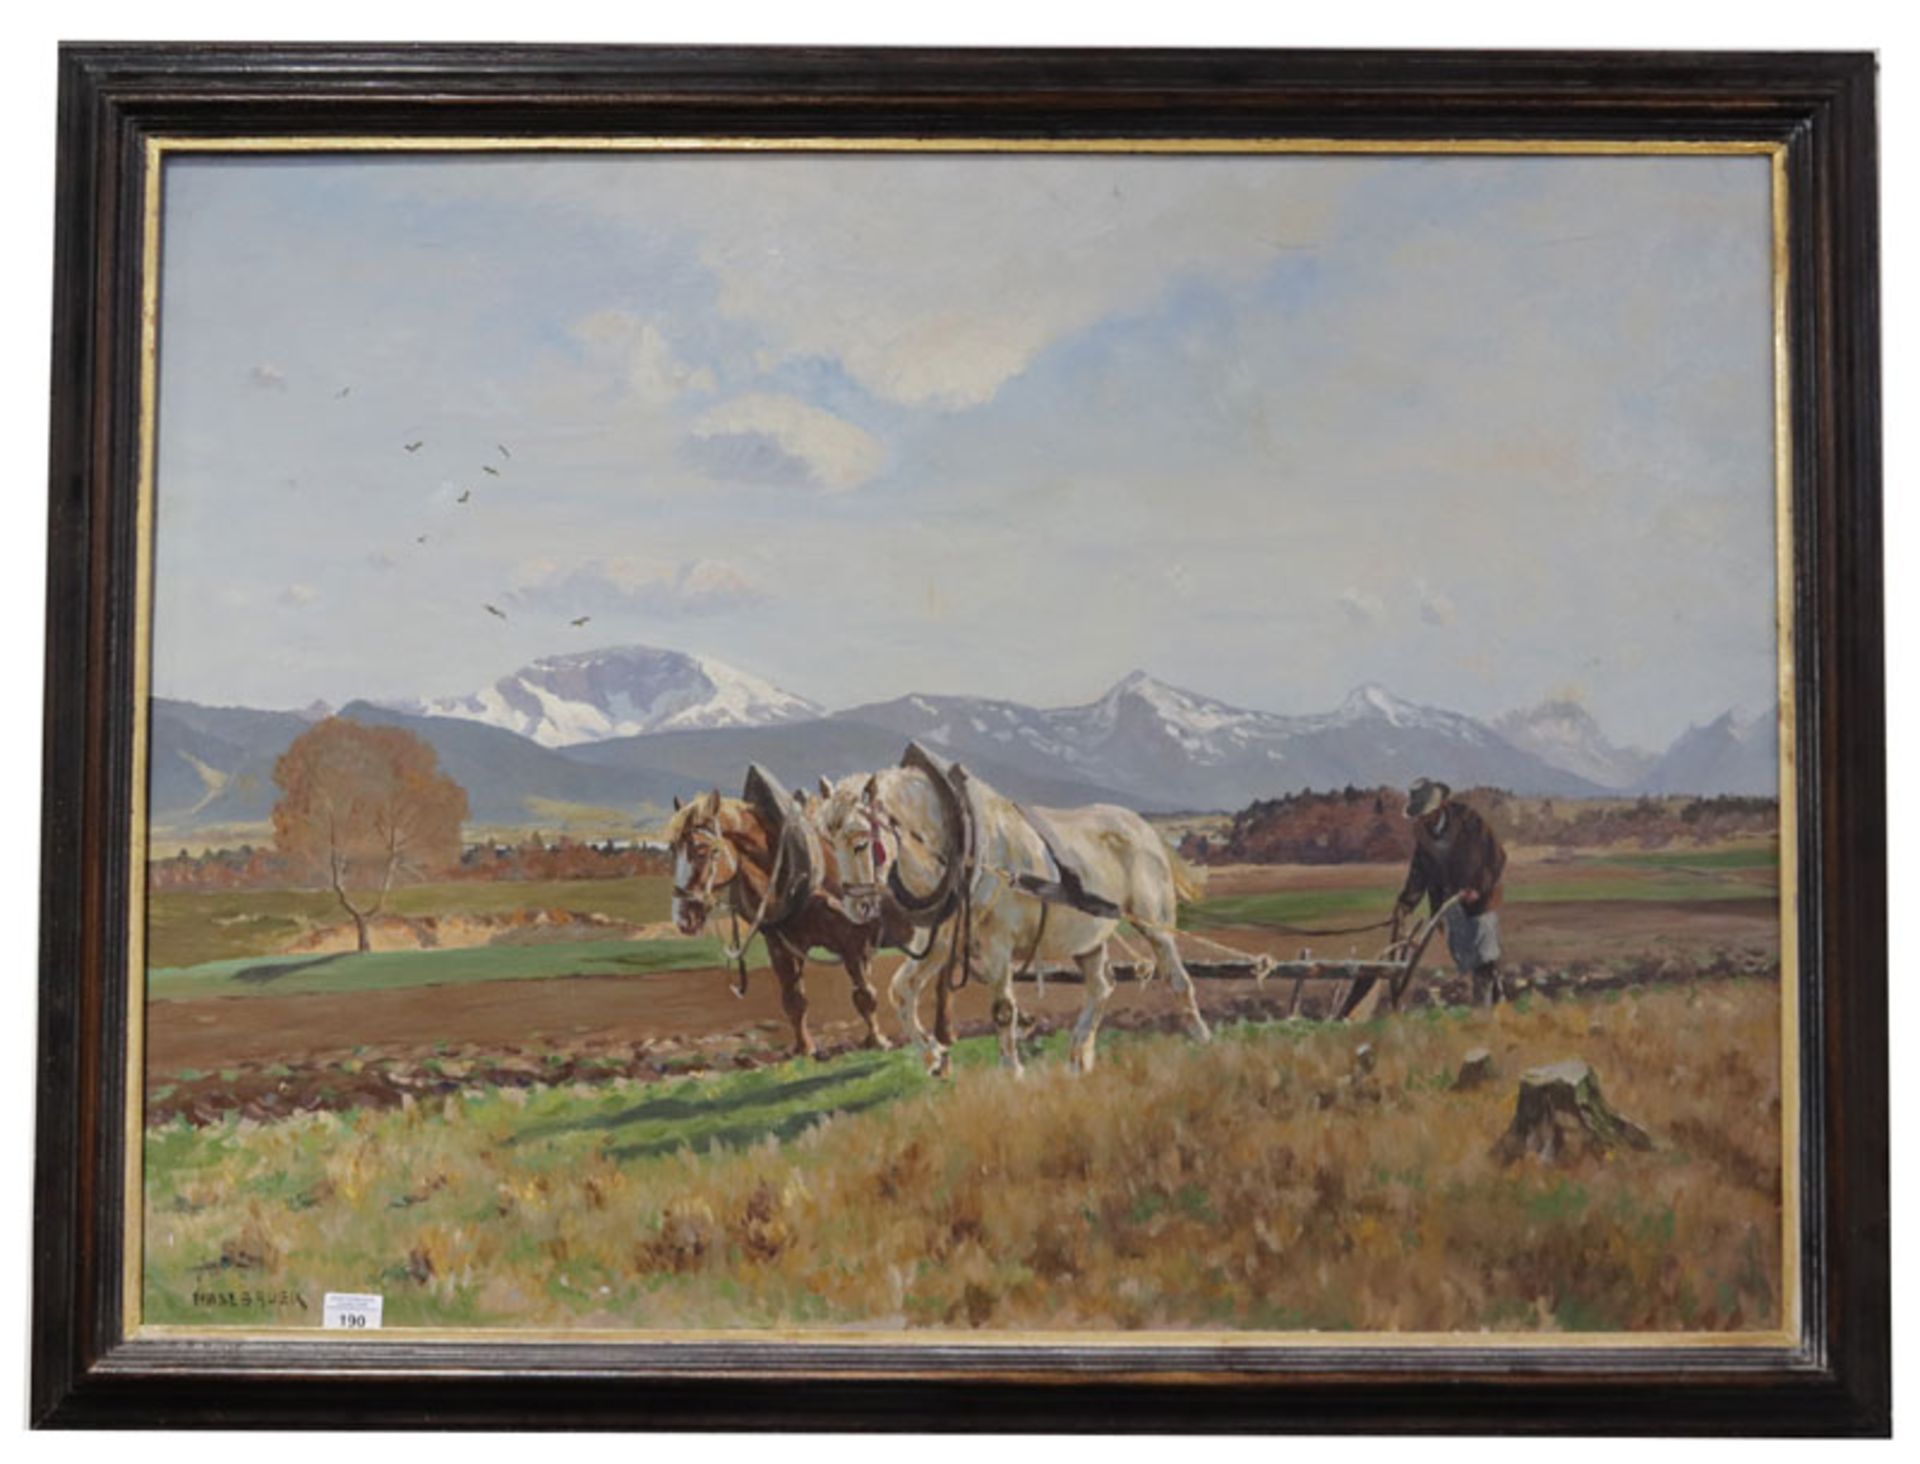 Gemälde ÖL/LW 'Voralpenlandschaft mit Pferdepflug bei der Arbeit', signiert Haslbauer, Paul, *